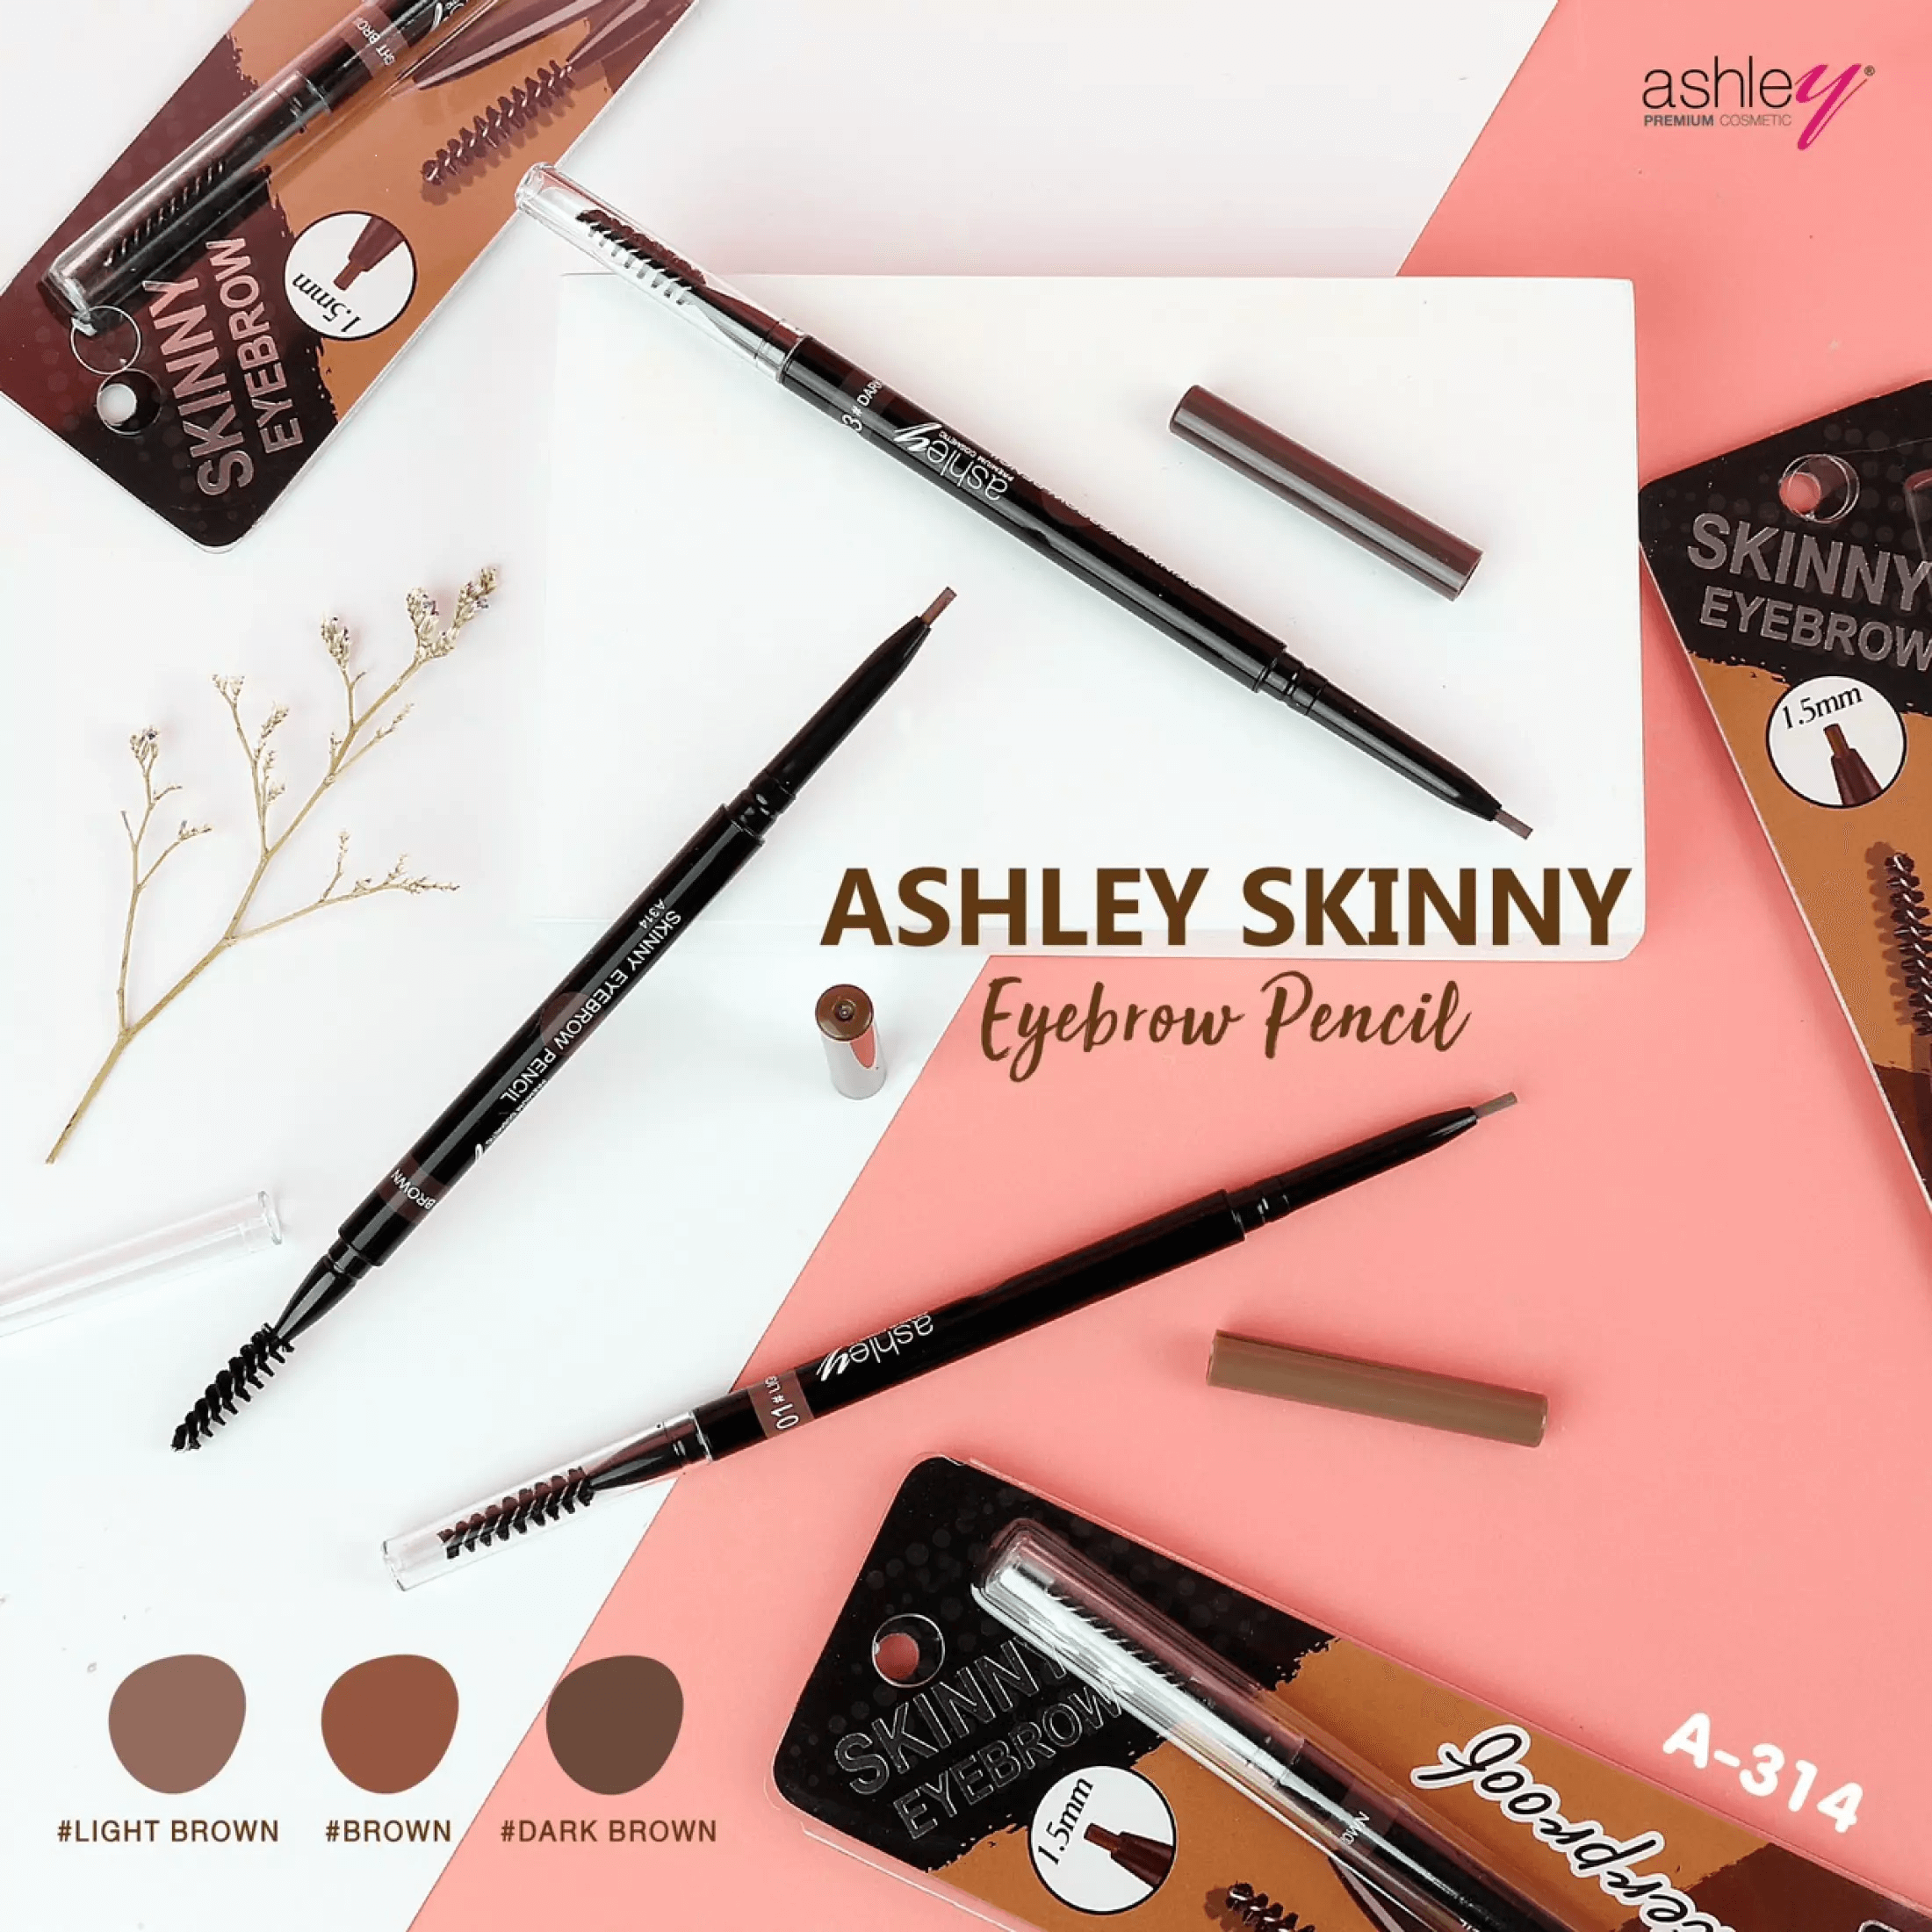 Ashley Skinny Eyebrow Pencil